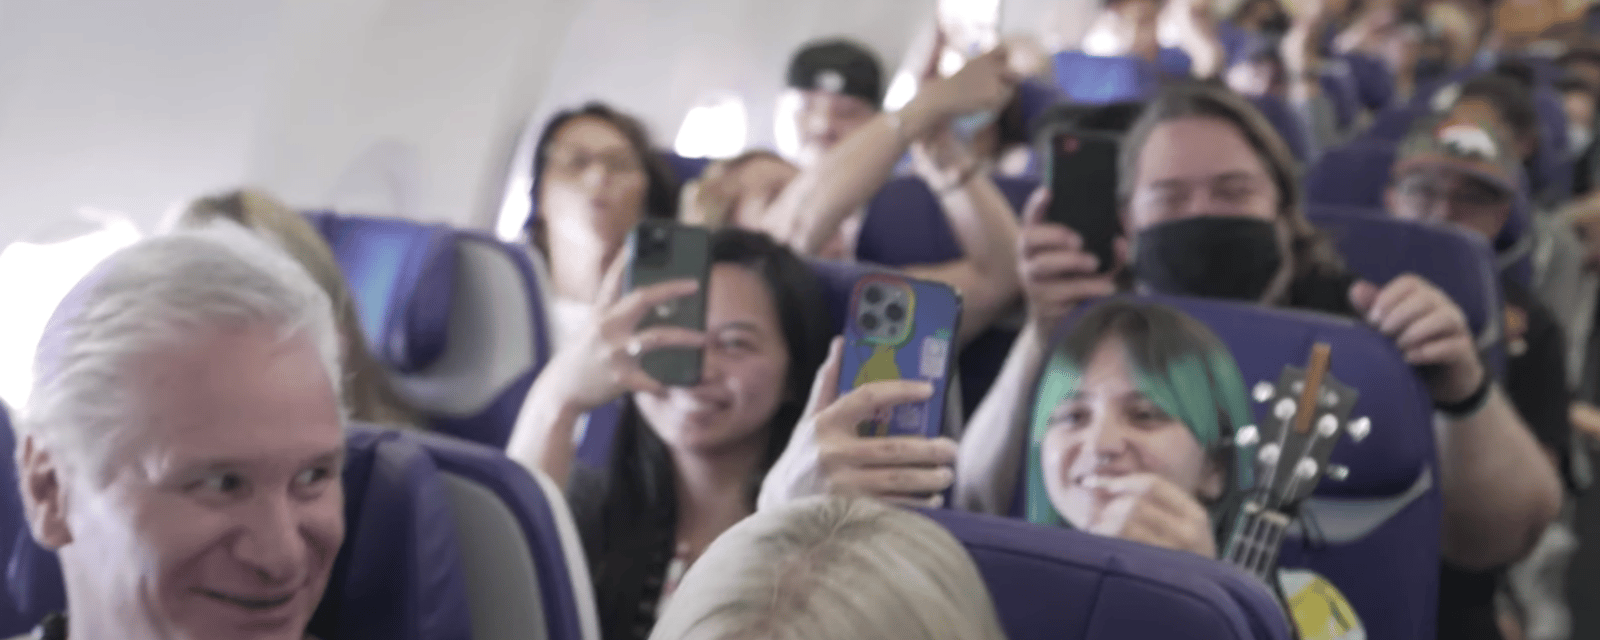 Une compagnie aérienne a trouvé une manière originale de faire patienter ses passagers